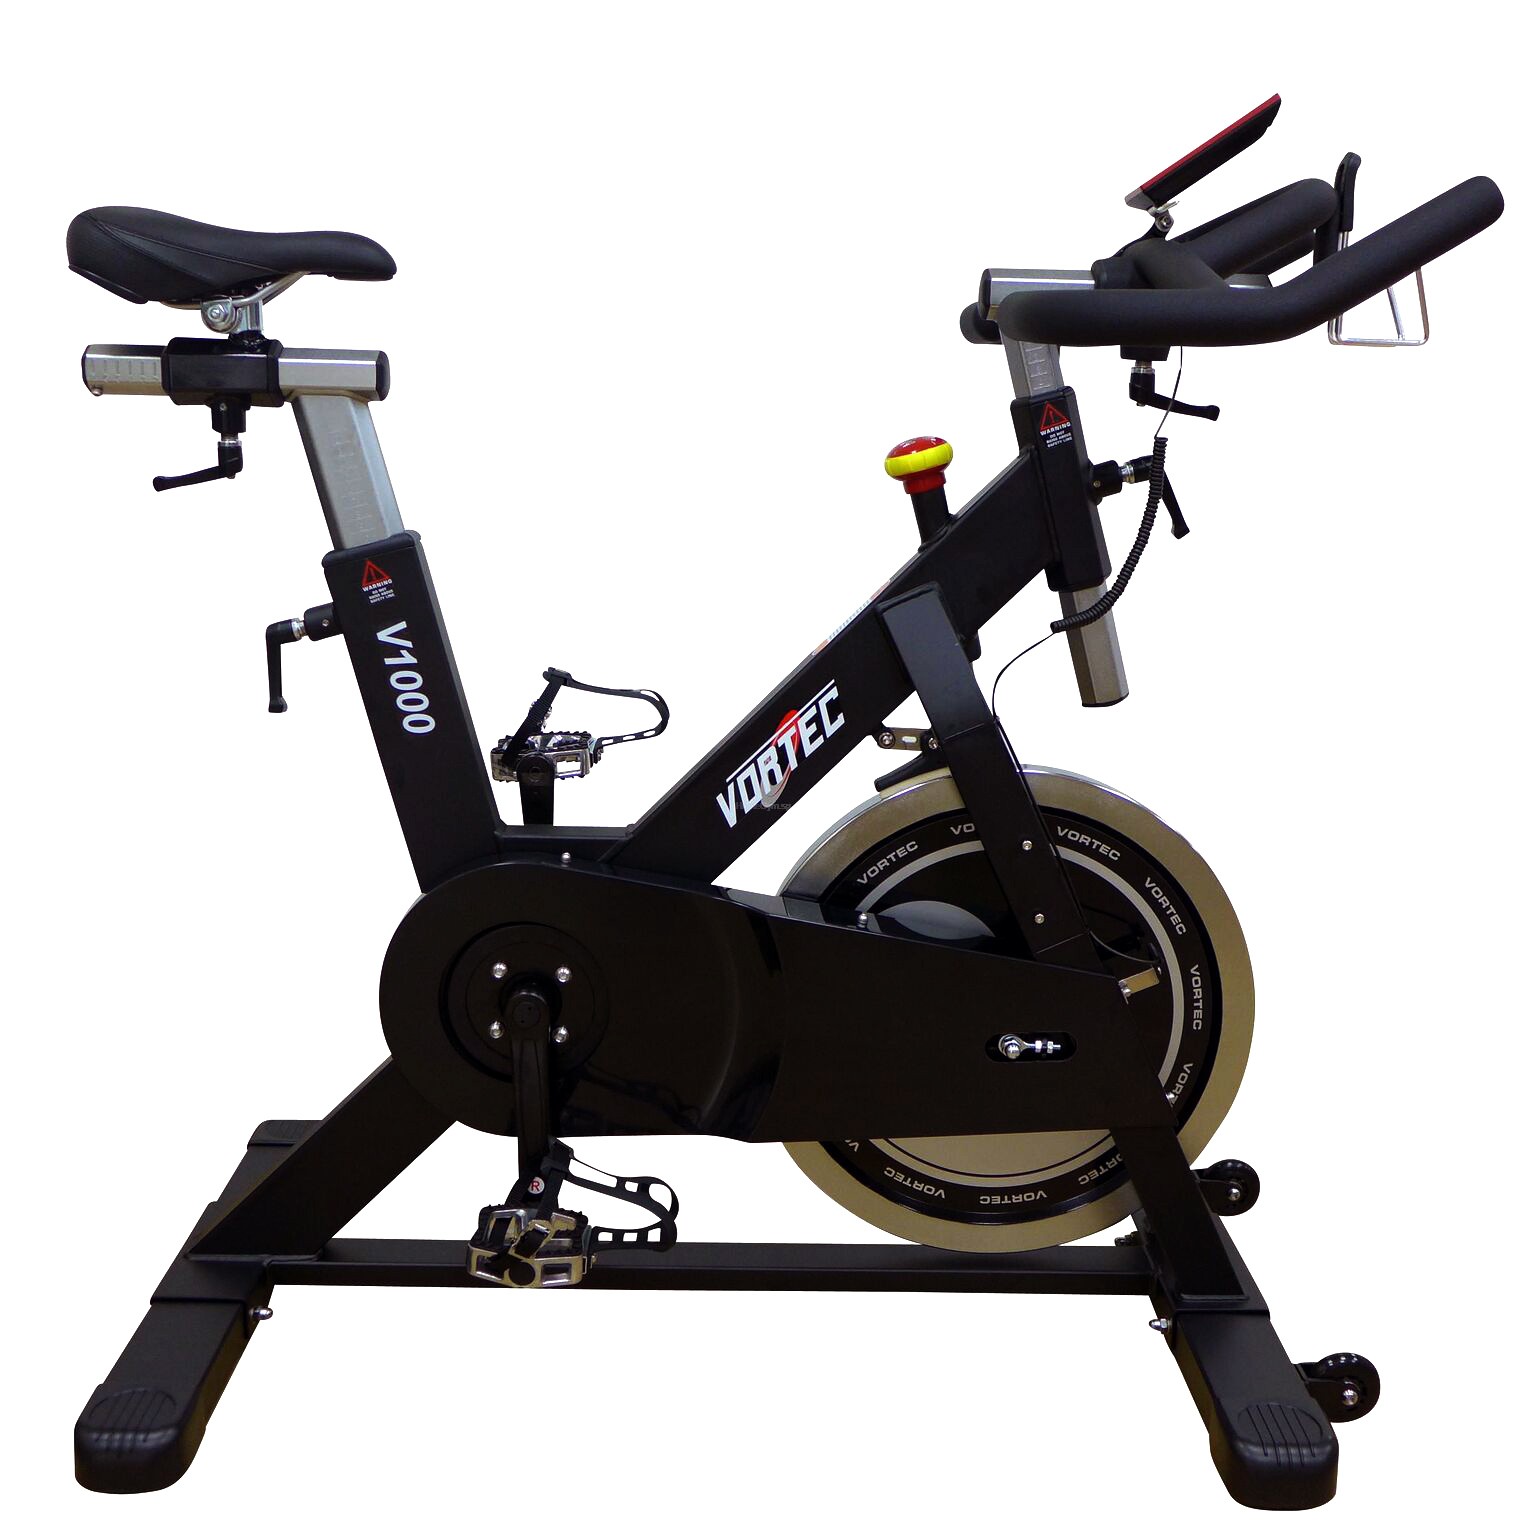 Vortec V1000 Spin Bike - Home Gym Malaysia